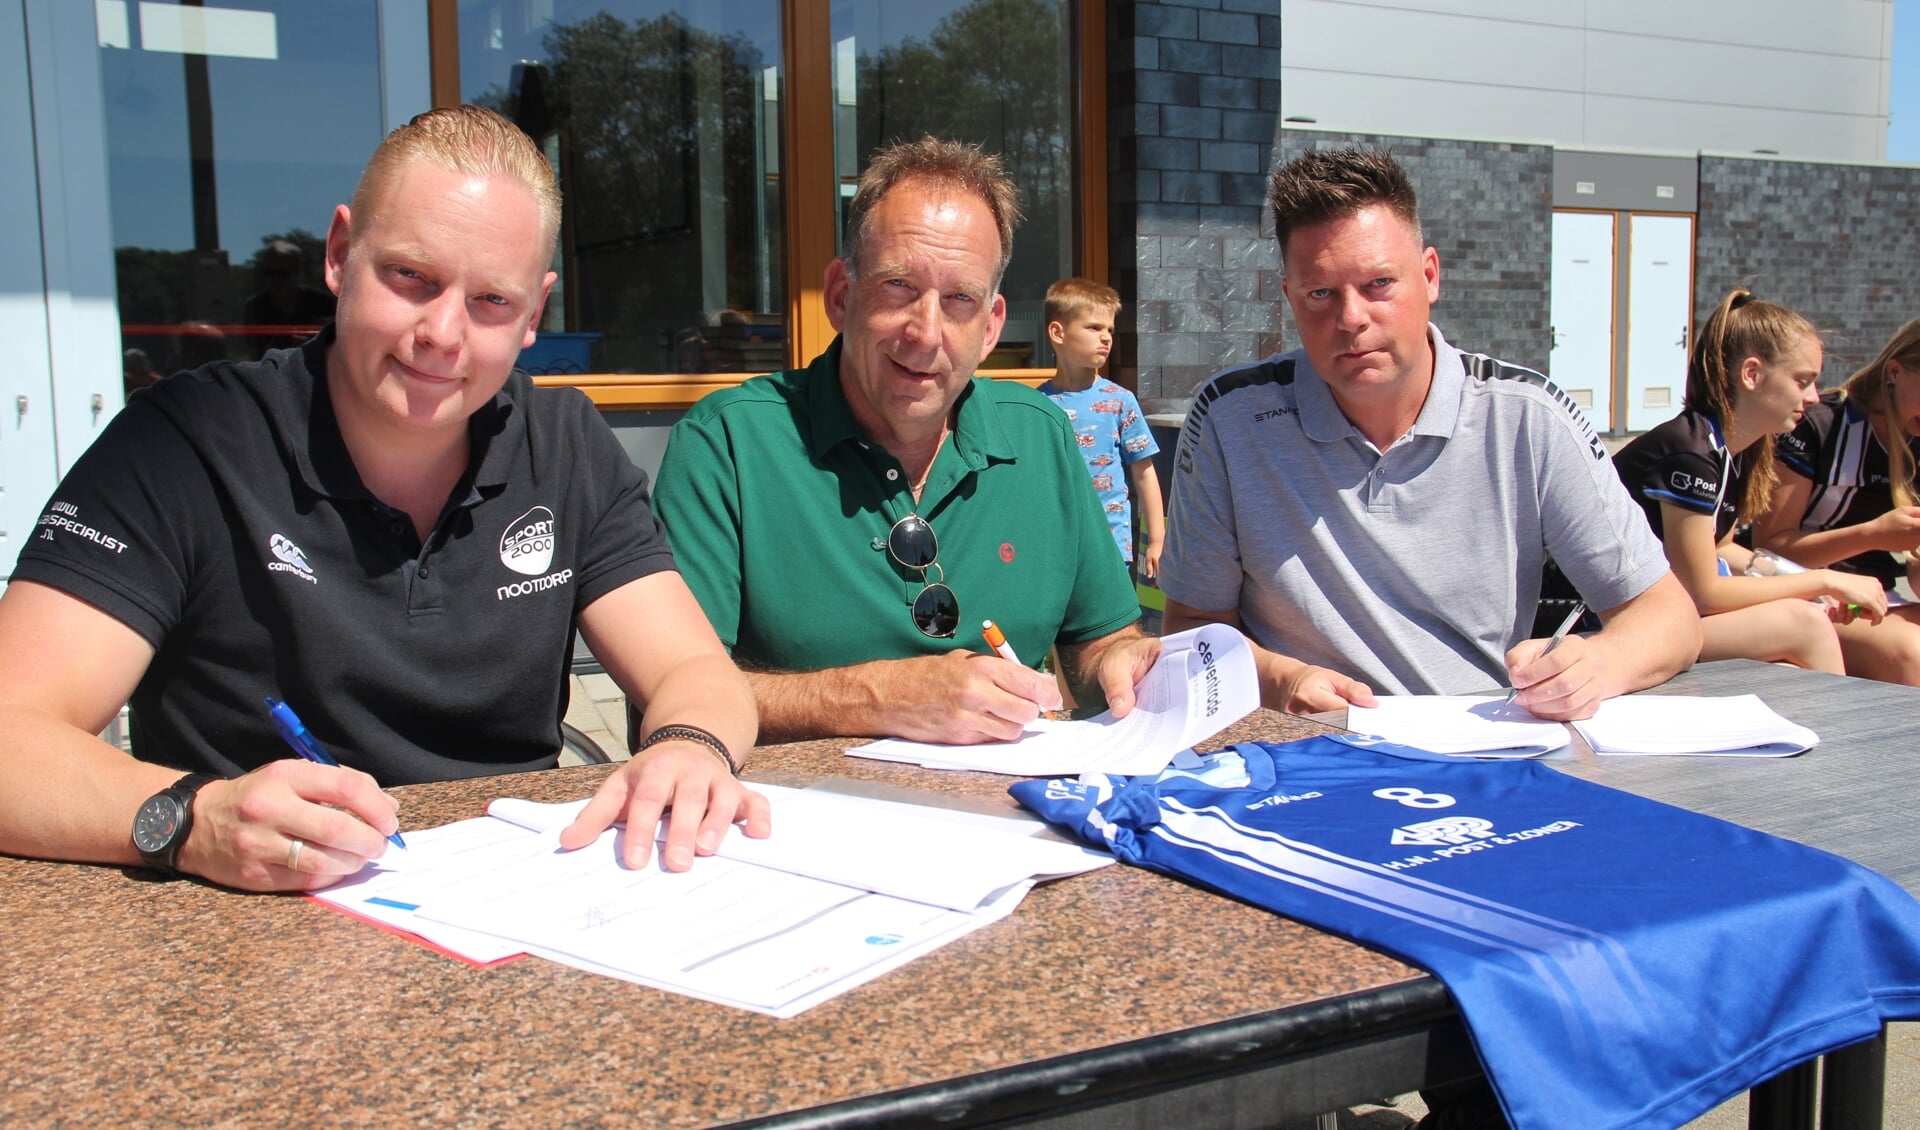 De ondertekening van het contract. Links Jeroen Kroeze van Sport 2000 Nootdorp, in het midden voorzitter Johan Diepens van Avantie en rechts Danny Kraaijeveld van Deventrade.